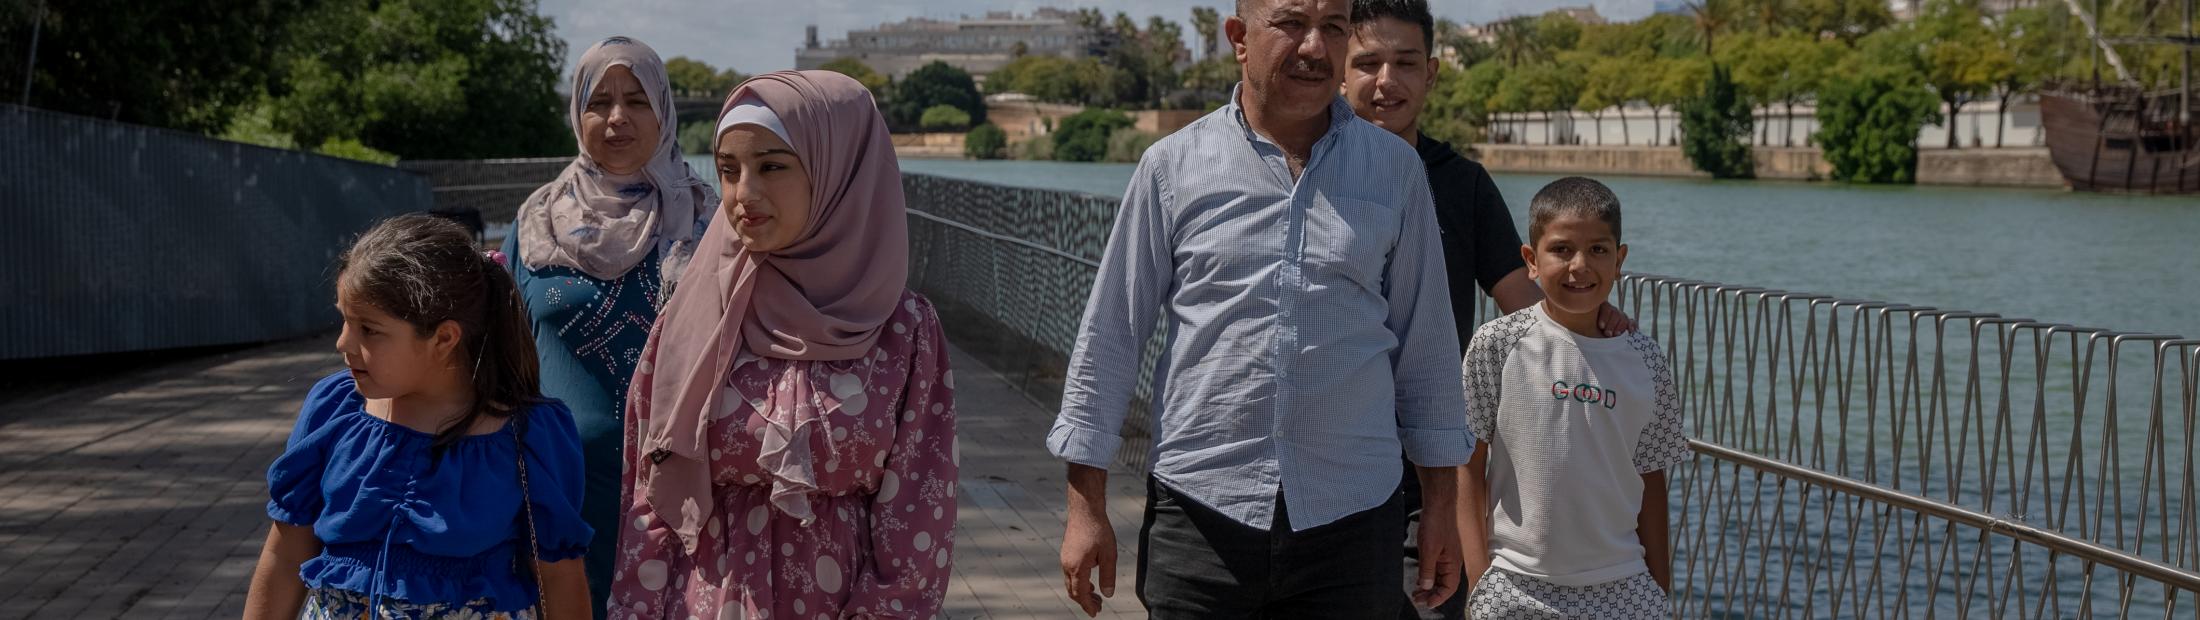 Família de refugiados sírios recomeça a vida em Espanha após terramotos na Turquia